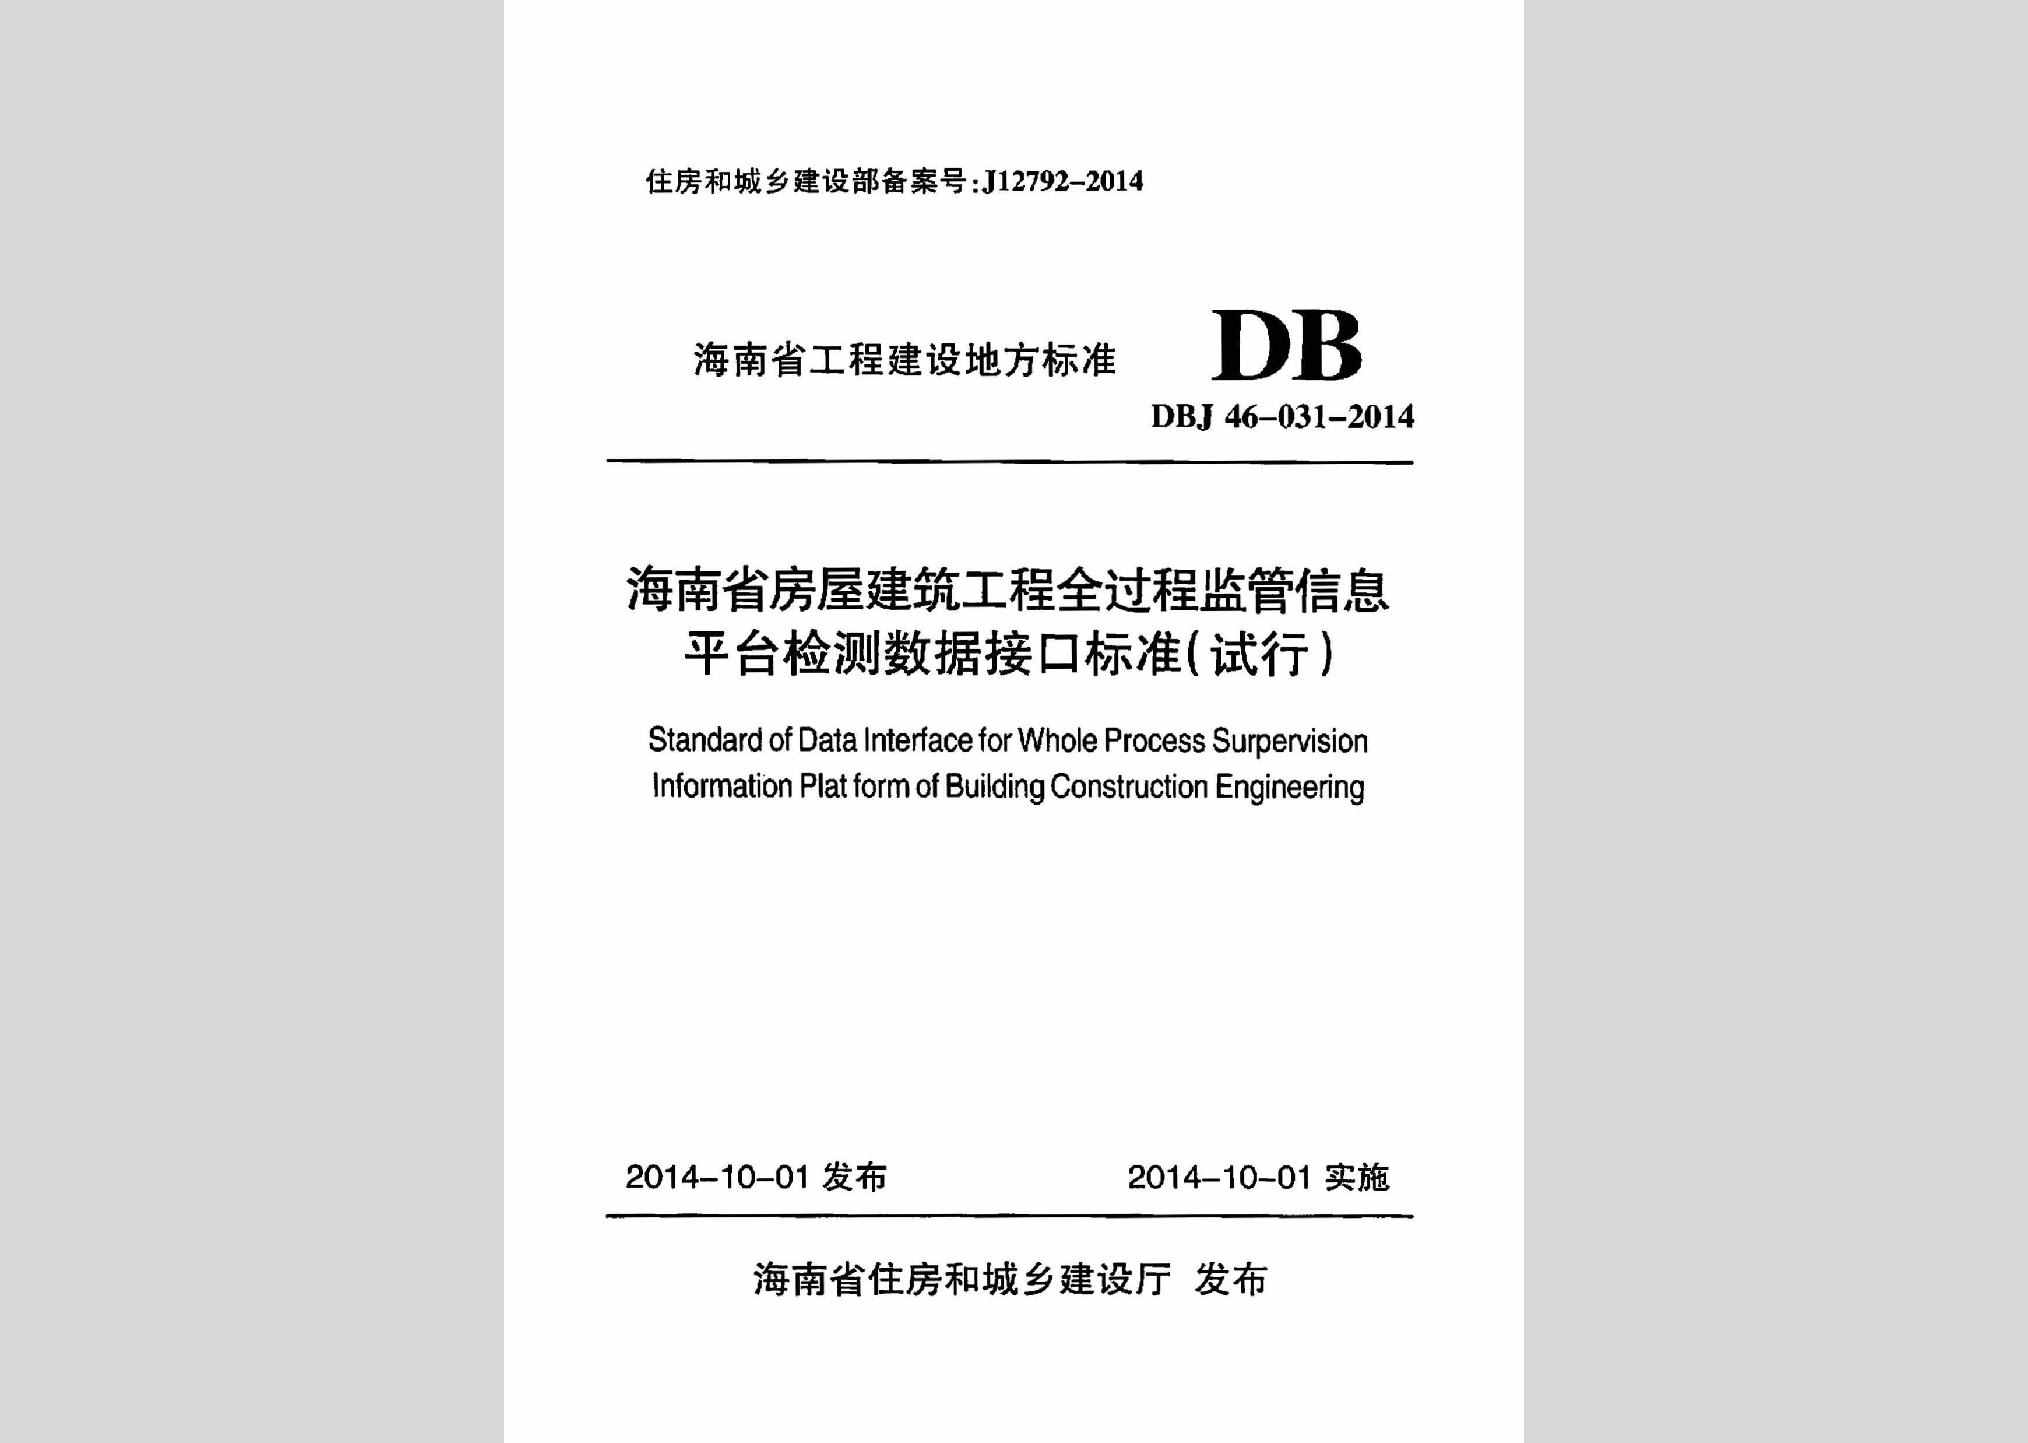 DBJ46-031-2014：海南省房屋建筑工程全过程监管信息平台检测数据接口标准(试行)